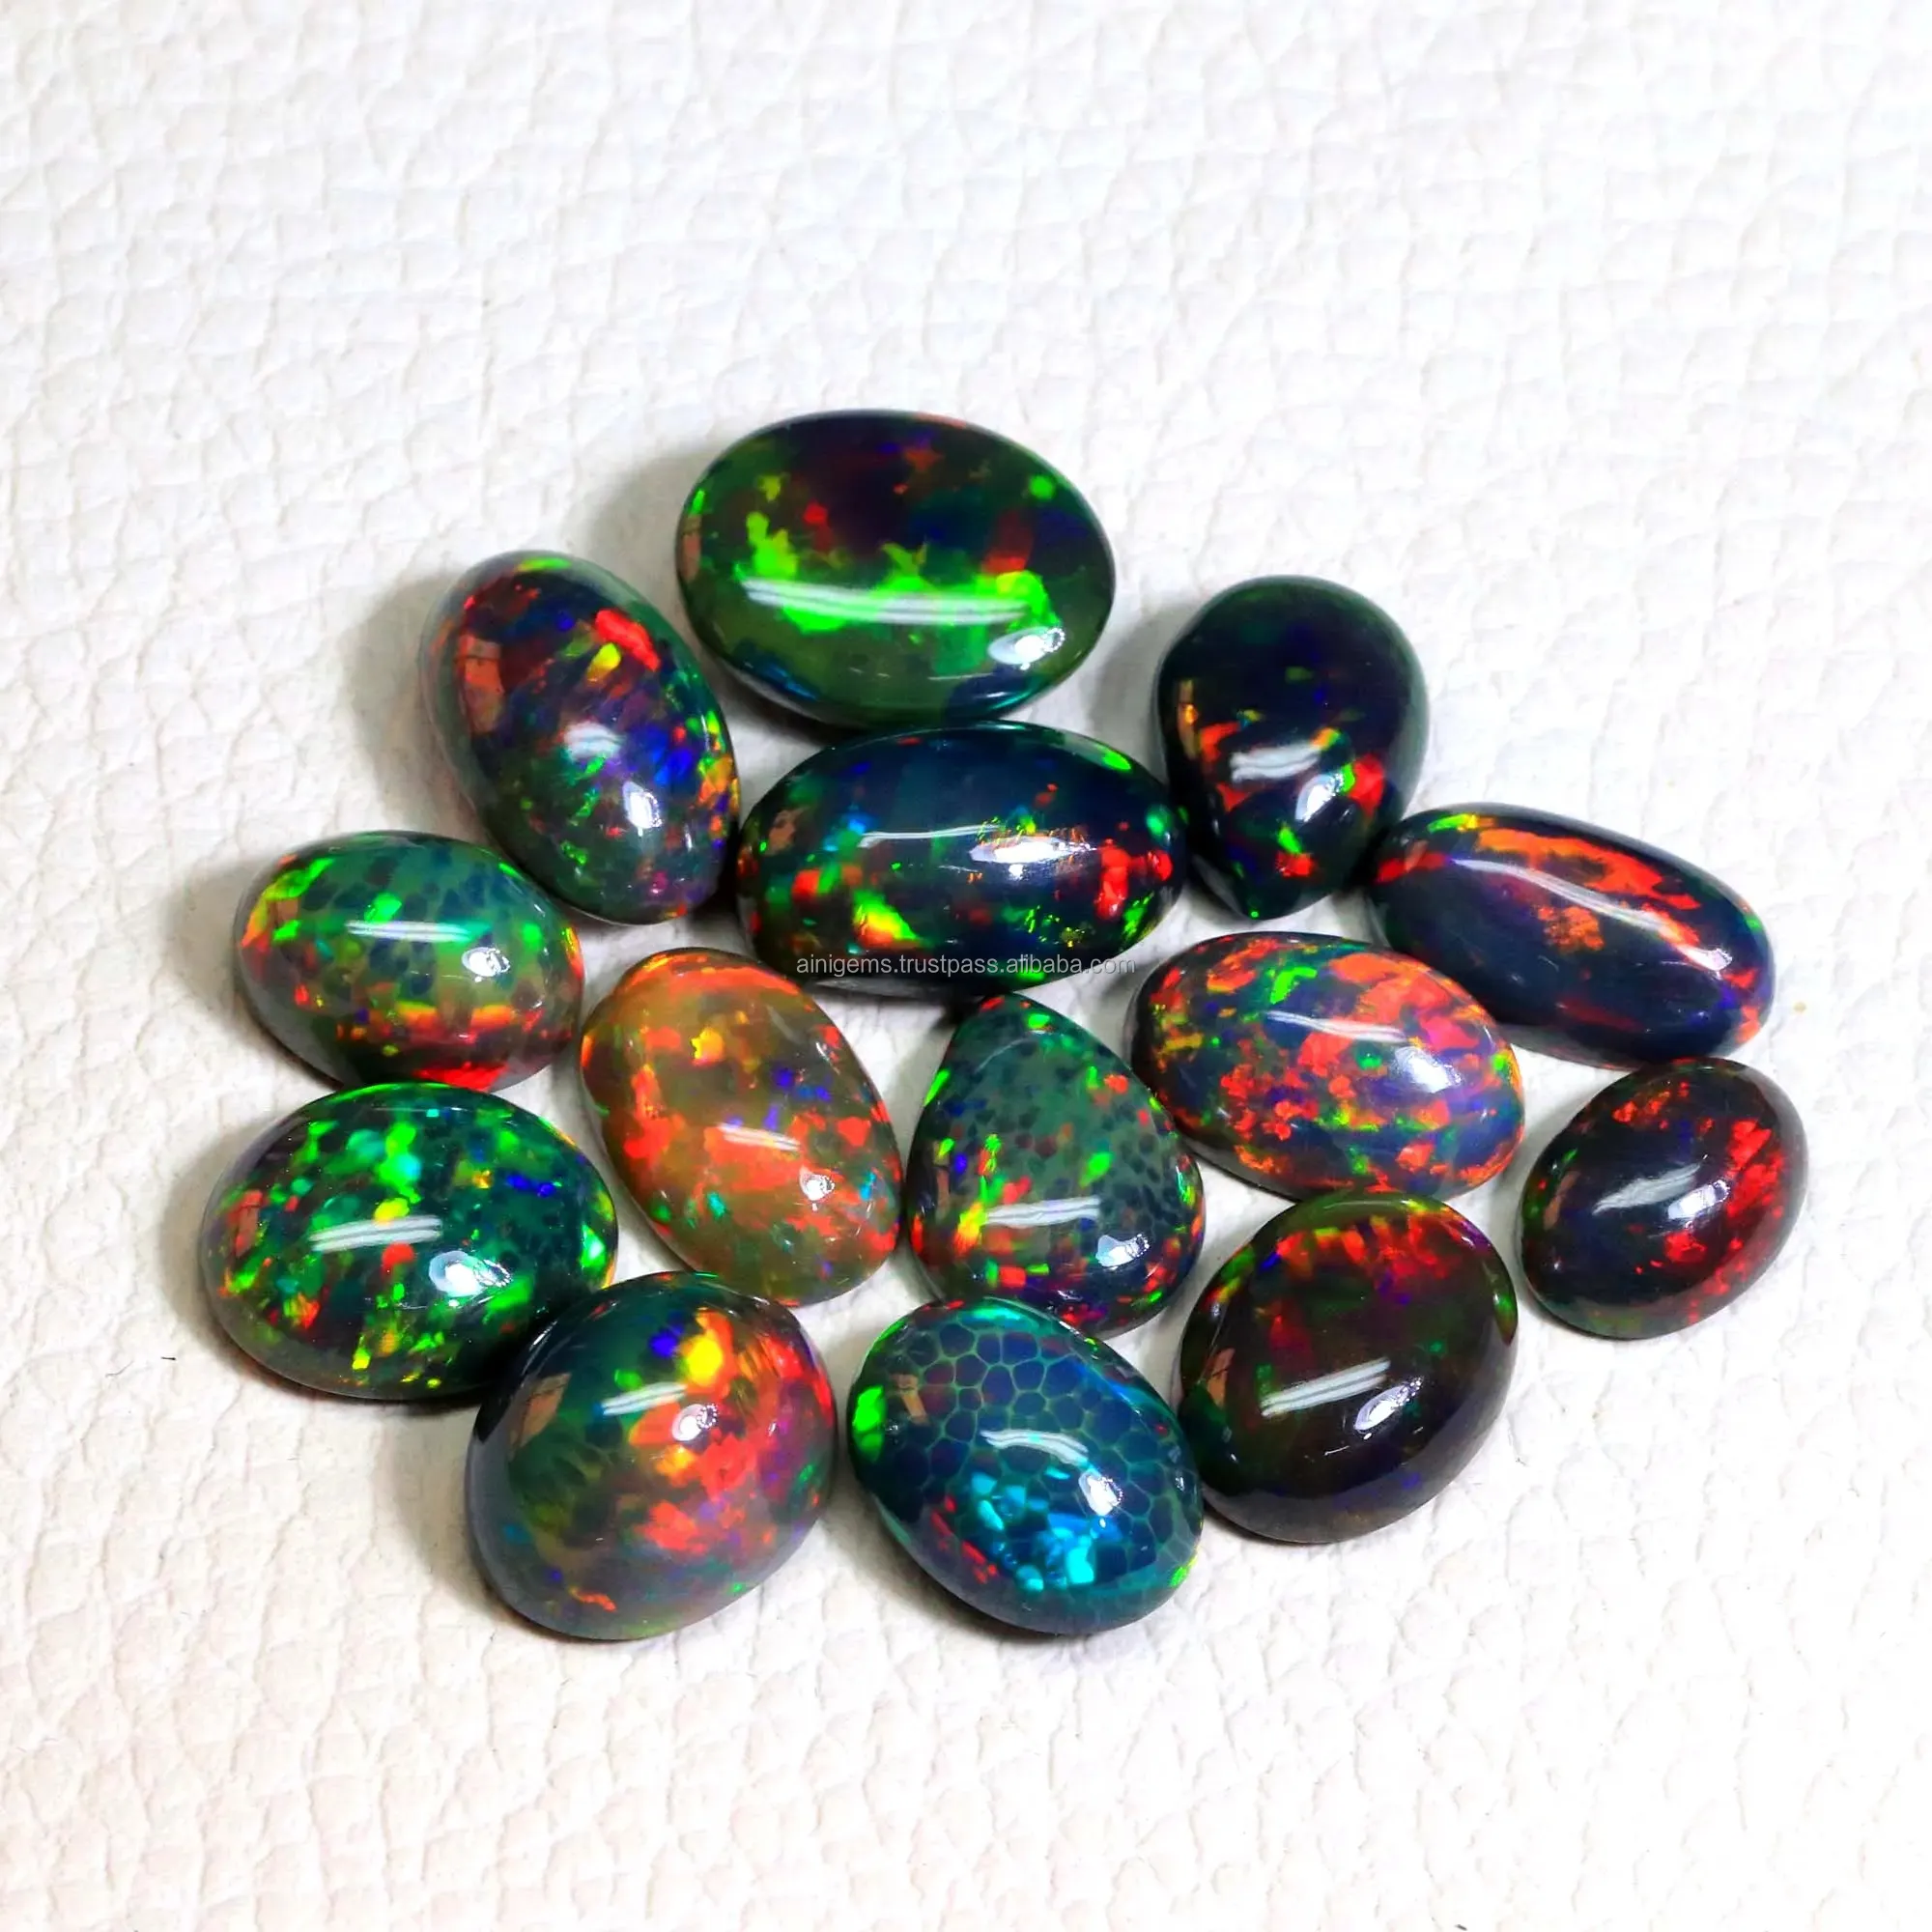 Natürlicher äthiopischer schwarzer Opal Cabochon Halbe del stein Mischform Opal Edelstein Schwarzer Opal Lot Steine Glatt poliert